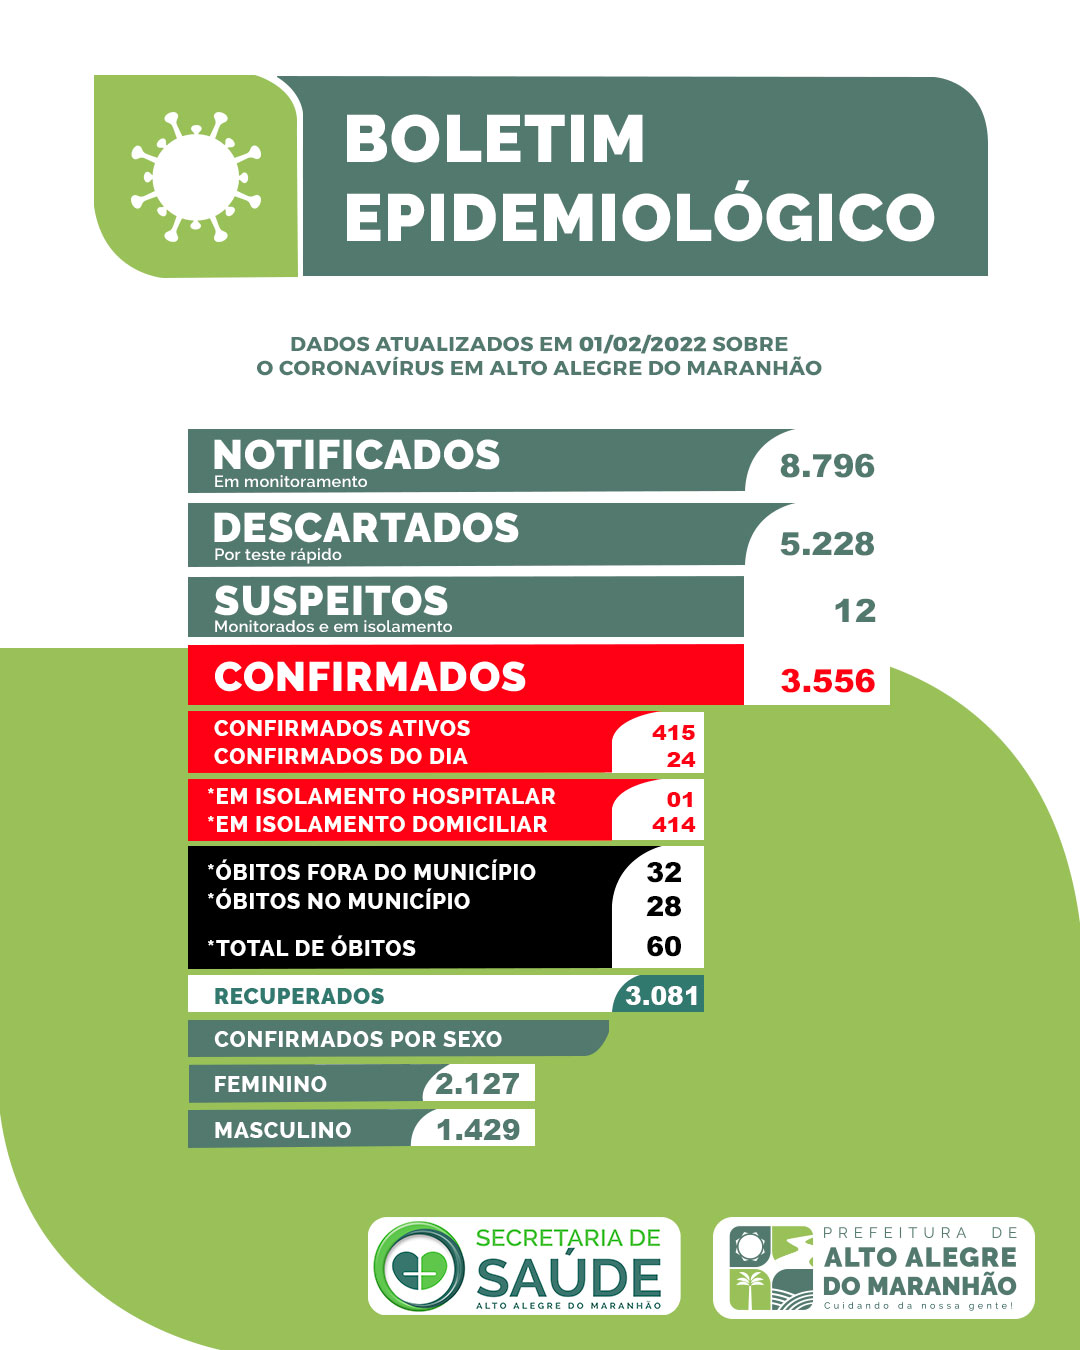 [COVID-19] Boletim epidemiológico atualizado de Alto Alegre do Maranhão